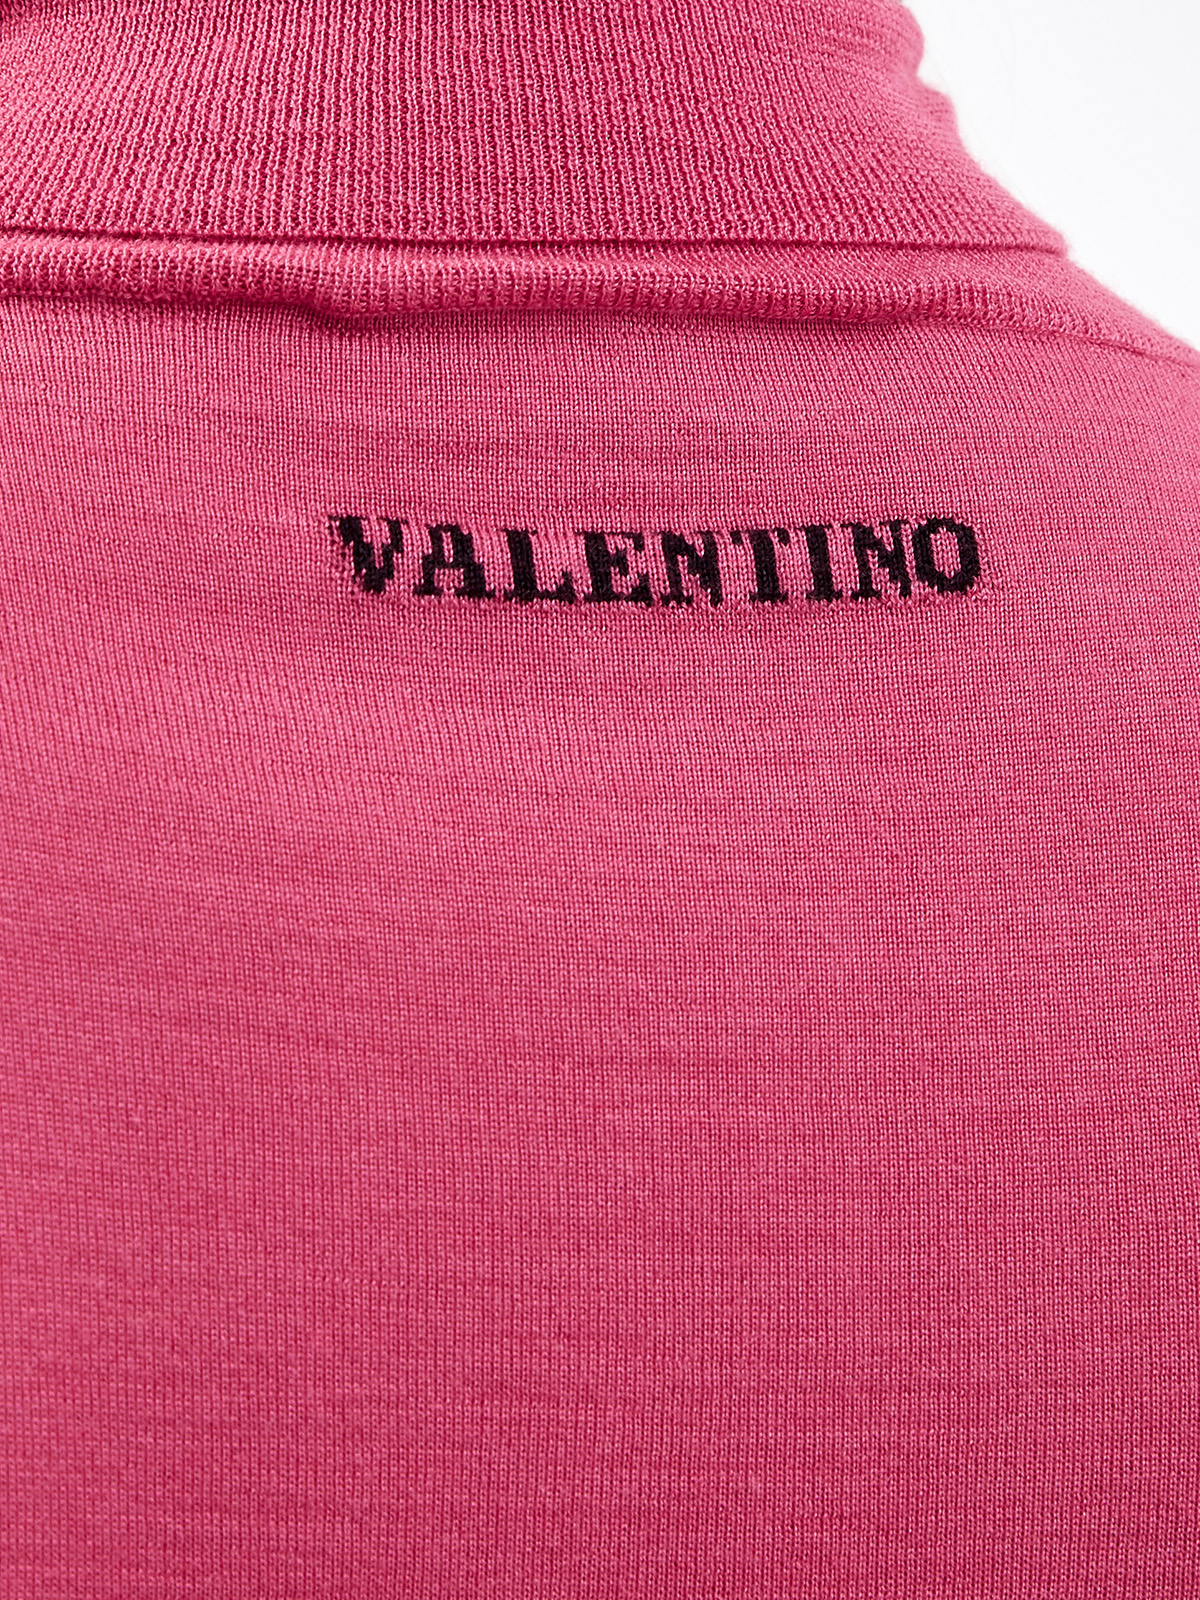 Джемпер из тонкой кашемировой пряжи с добавлением шелка VALENTINO, цвет розовый, размер 42 - фото 5